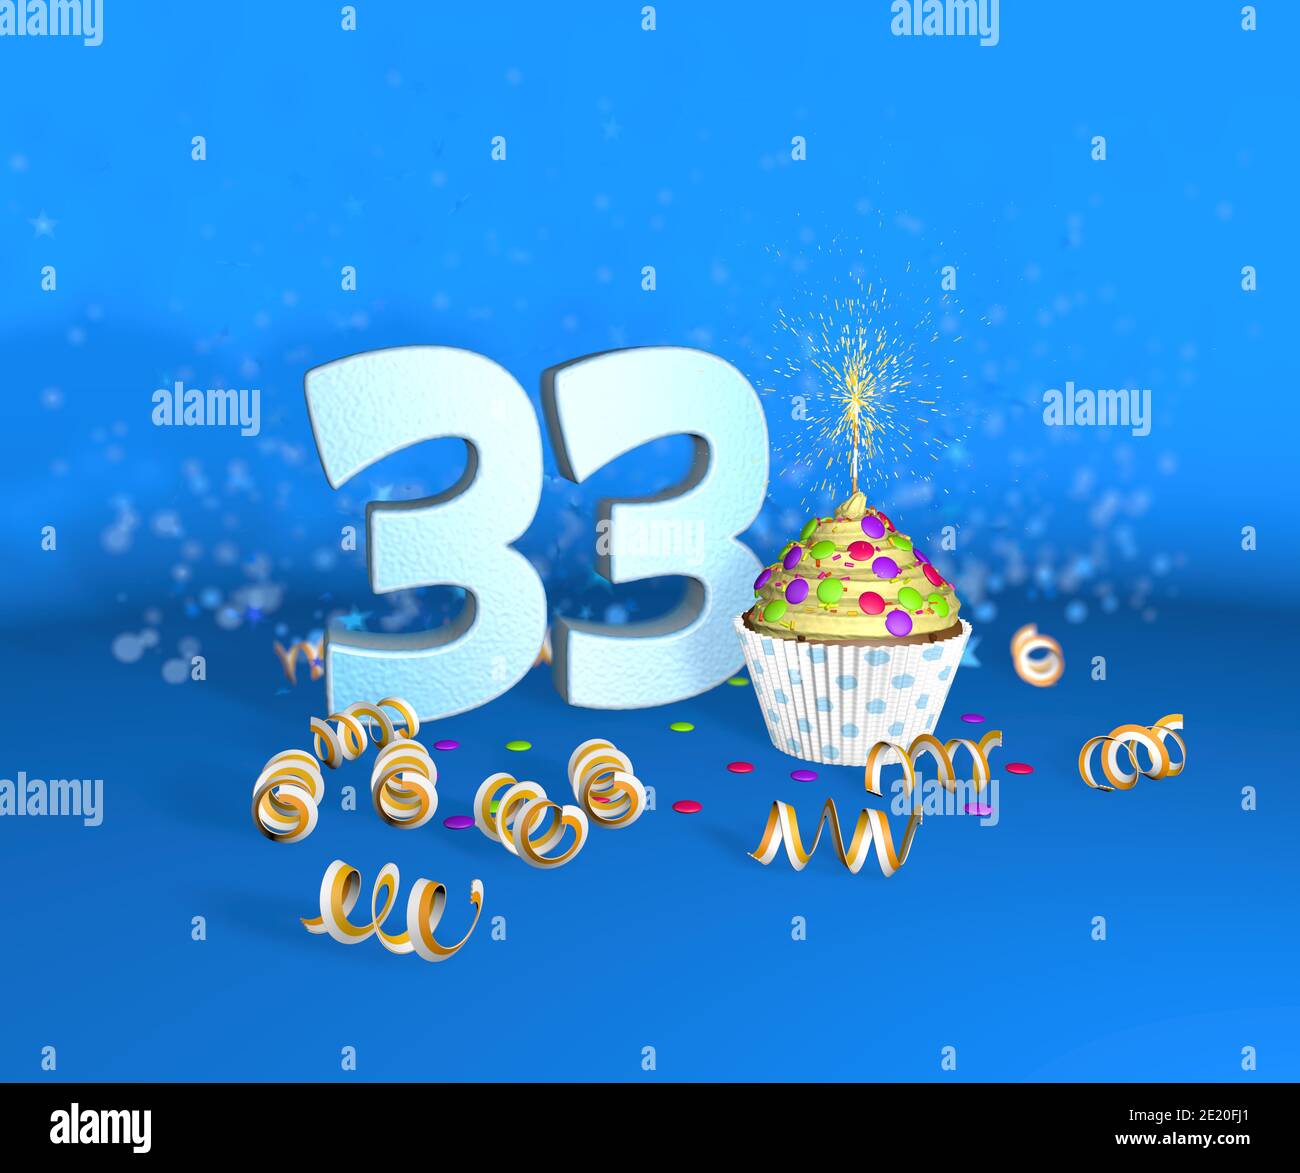 Cupcake mit funkelnder Kerze zum Geburtstag oder Jubiläum 33 mit der großen Nummer in weiß mit gelben Streamern auf blauem Hintergrund. 3d-Illustration Stockfoto